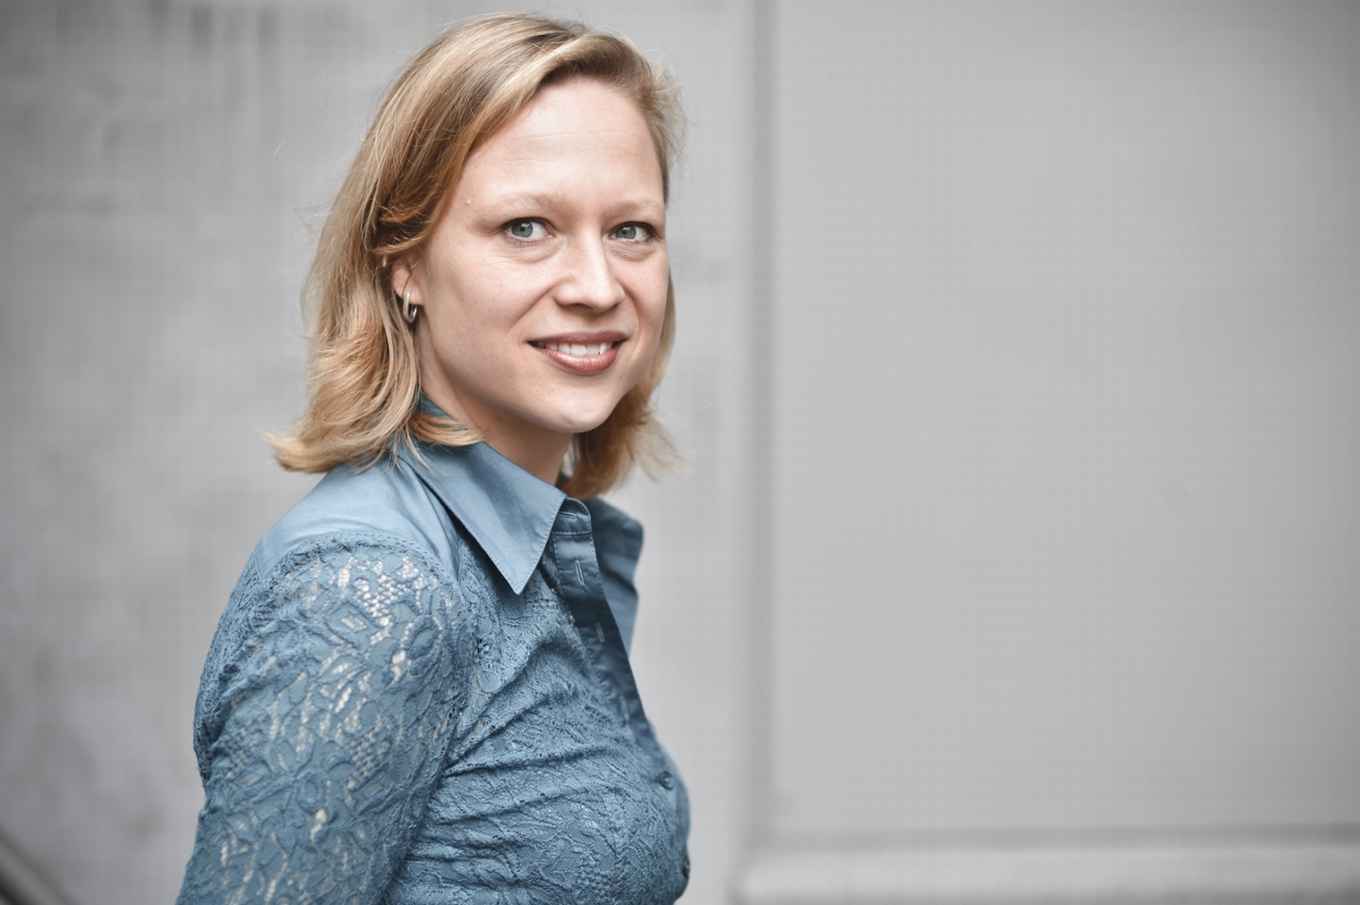 mw. prof. dr. Julia Noordegraaf, medewerker FGw, hoogleraar Erfgoed en digitale cultuur